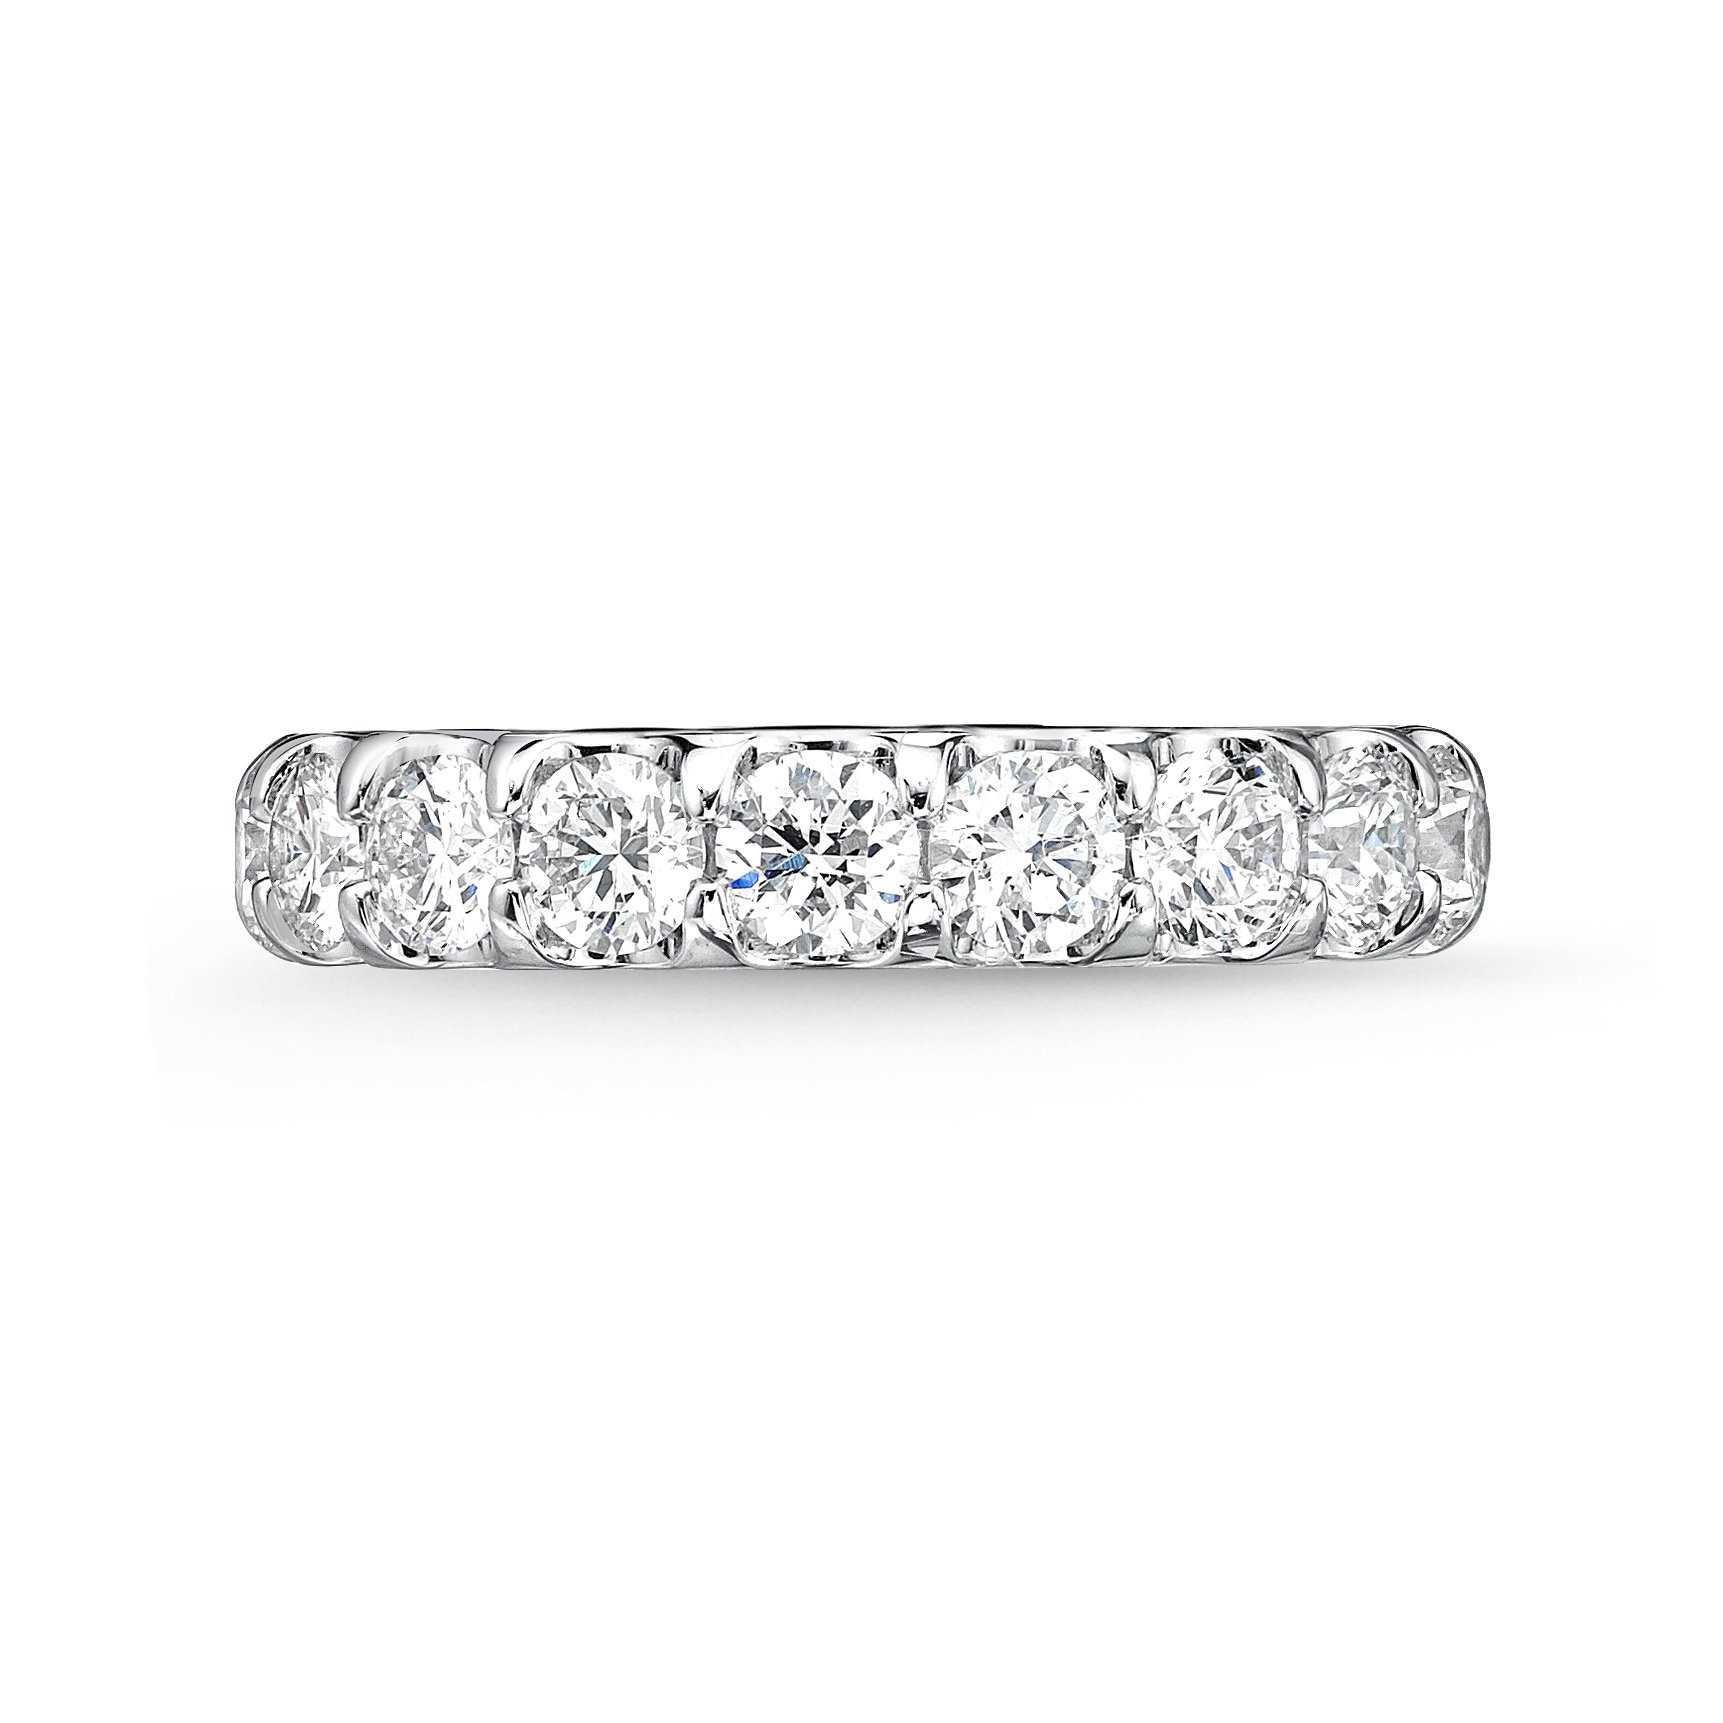 Le bracelet Memoire Platinum Diamond Odessa est réalisé en métal platine et est serti de 9 diamants ronds brillants représentant 1,53ctw de couleur F-G VS Clarity. En outre, cette pièce est proposée en or rose, en or blanc et en or jaune. Elle est